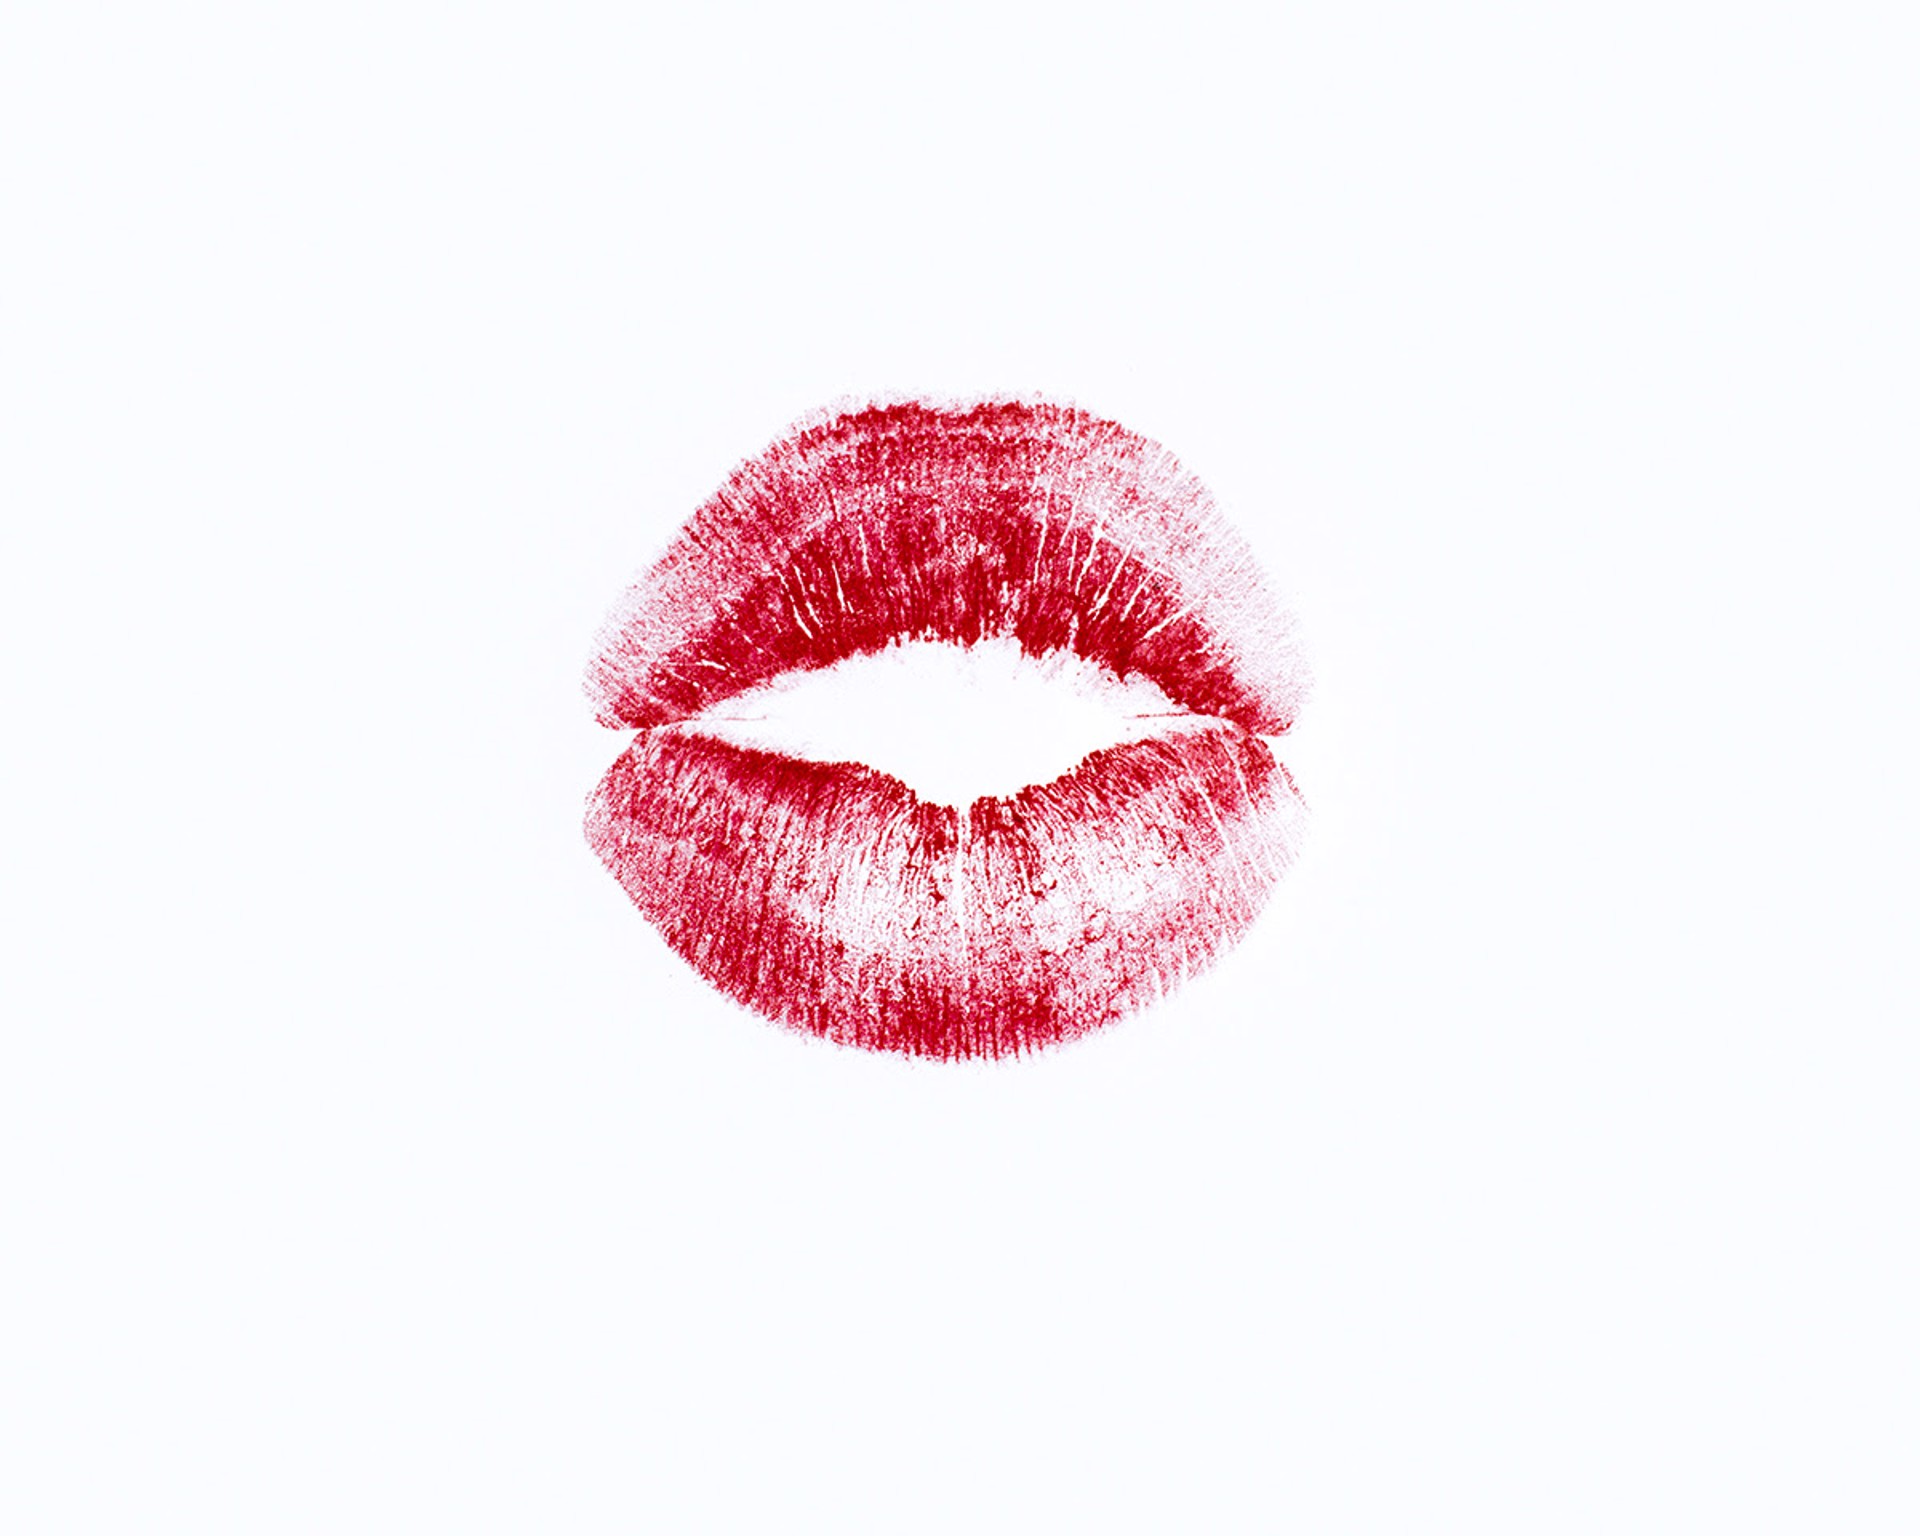 Lip Print by Tyler Shields